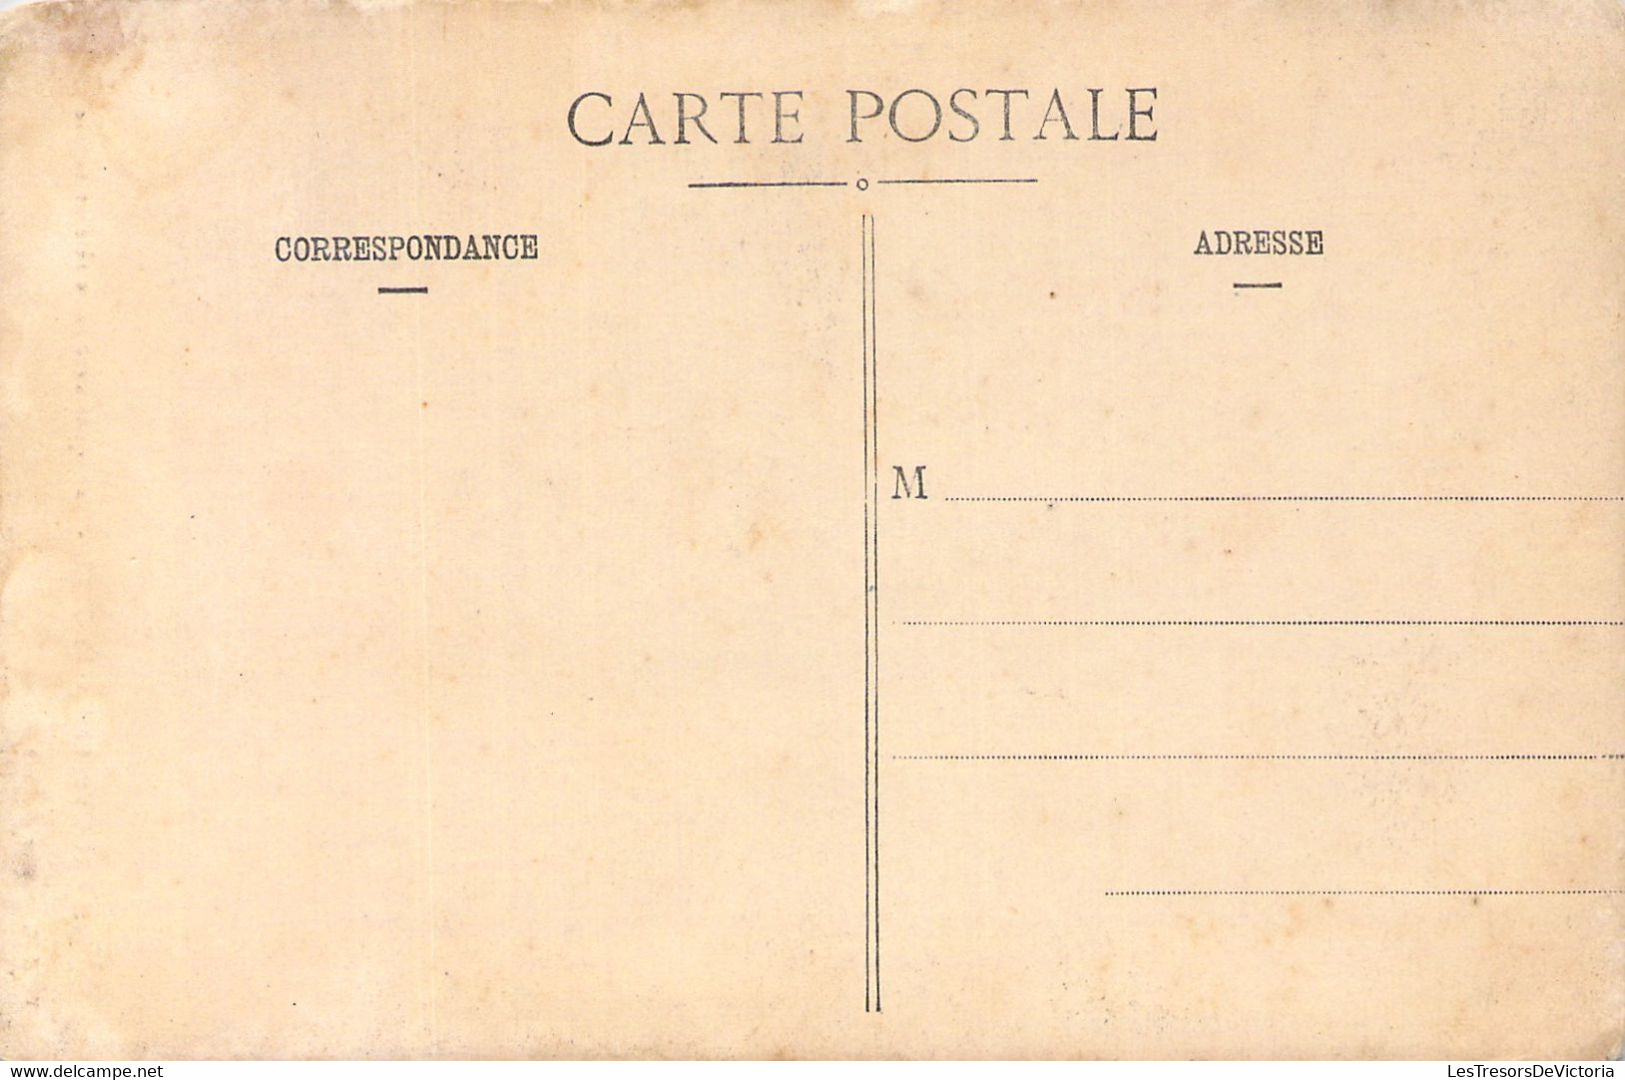 NOUVELLE CALEDONIE - Canaques Avec Casse Tête Et Sagaie - Folklore - WHC Editeur - Carte Postale Ancienne - Nouvelle Calédonie